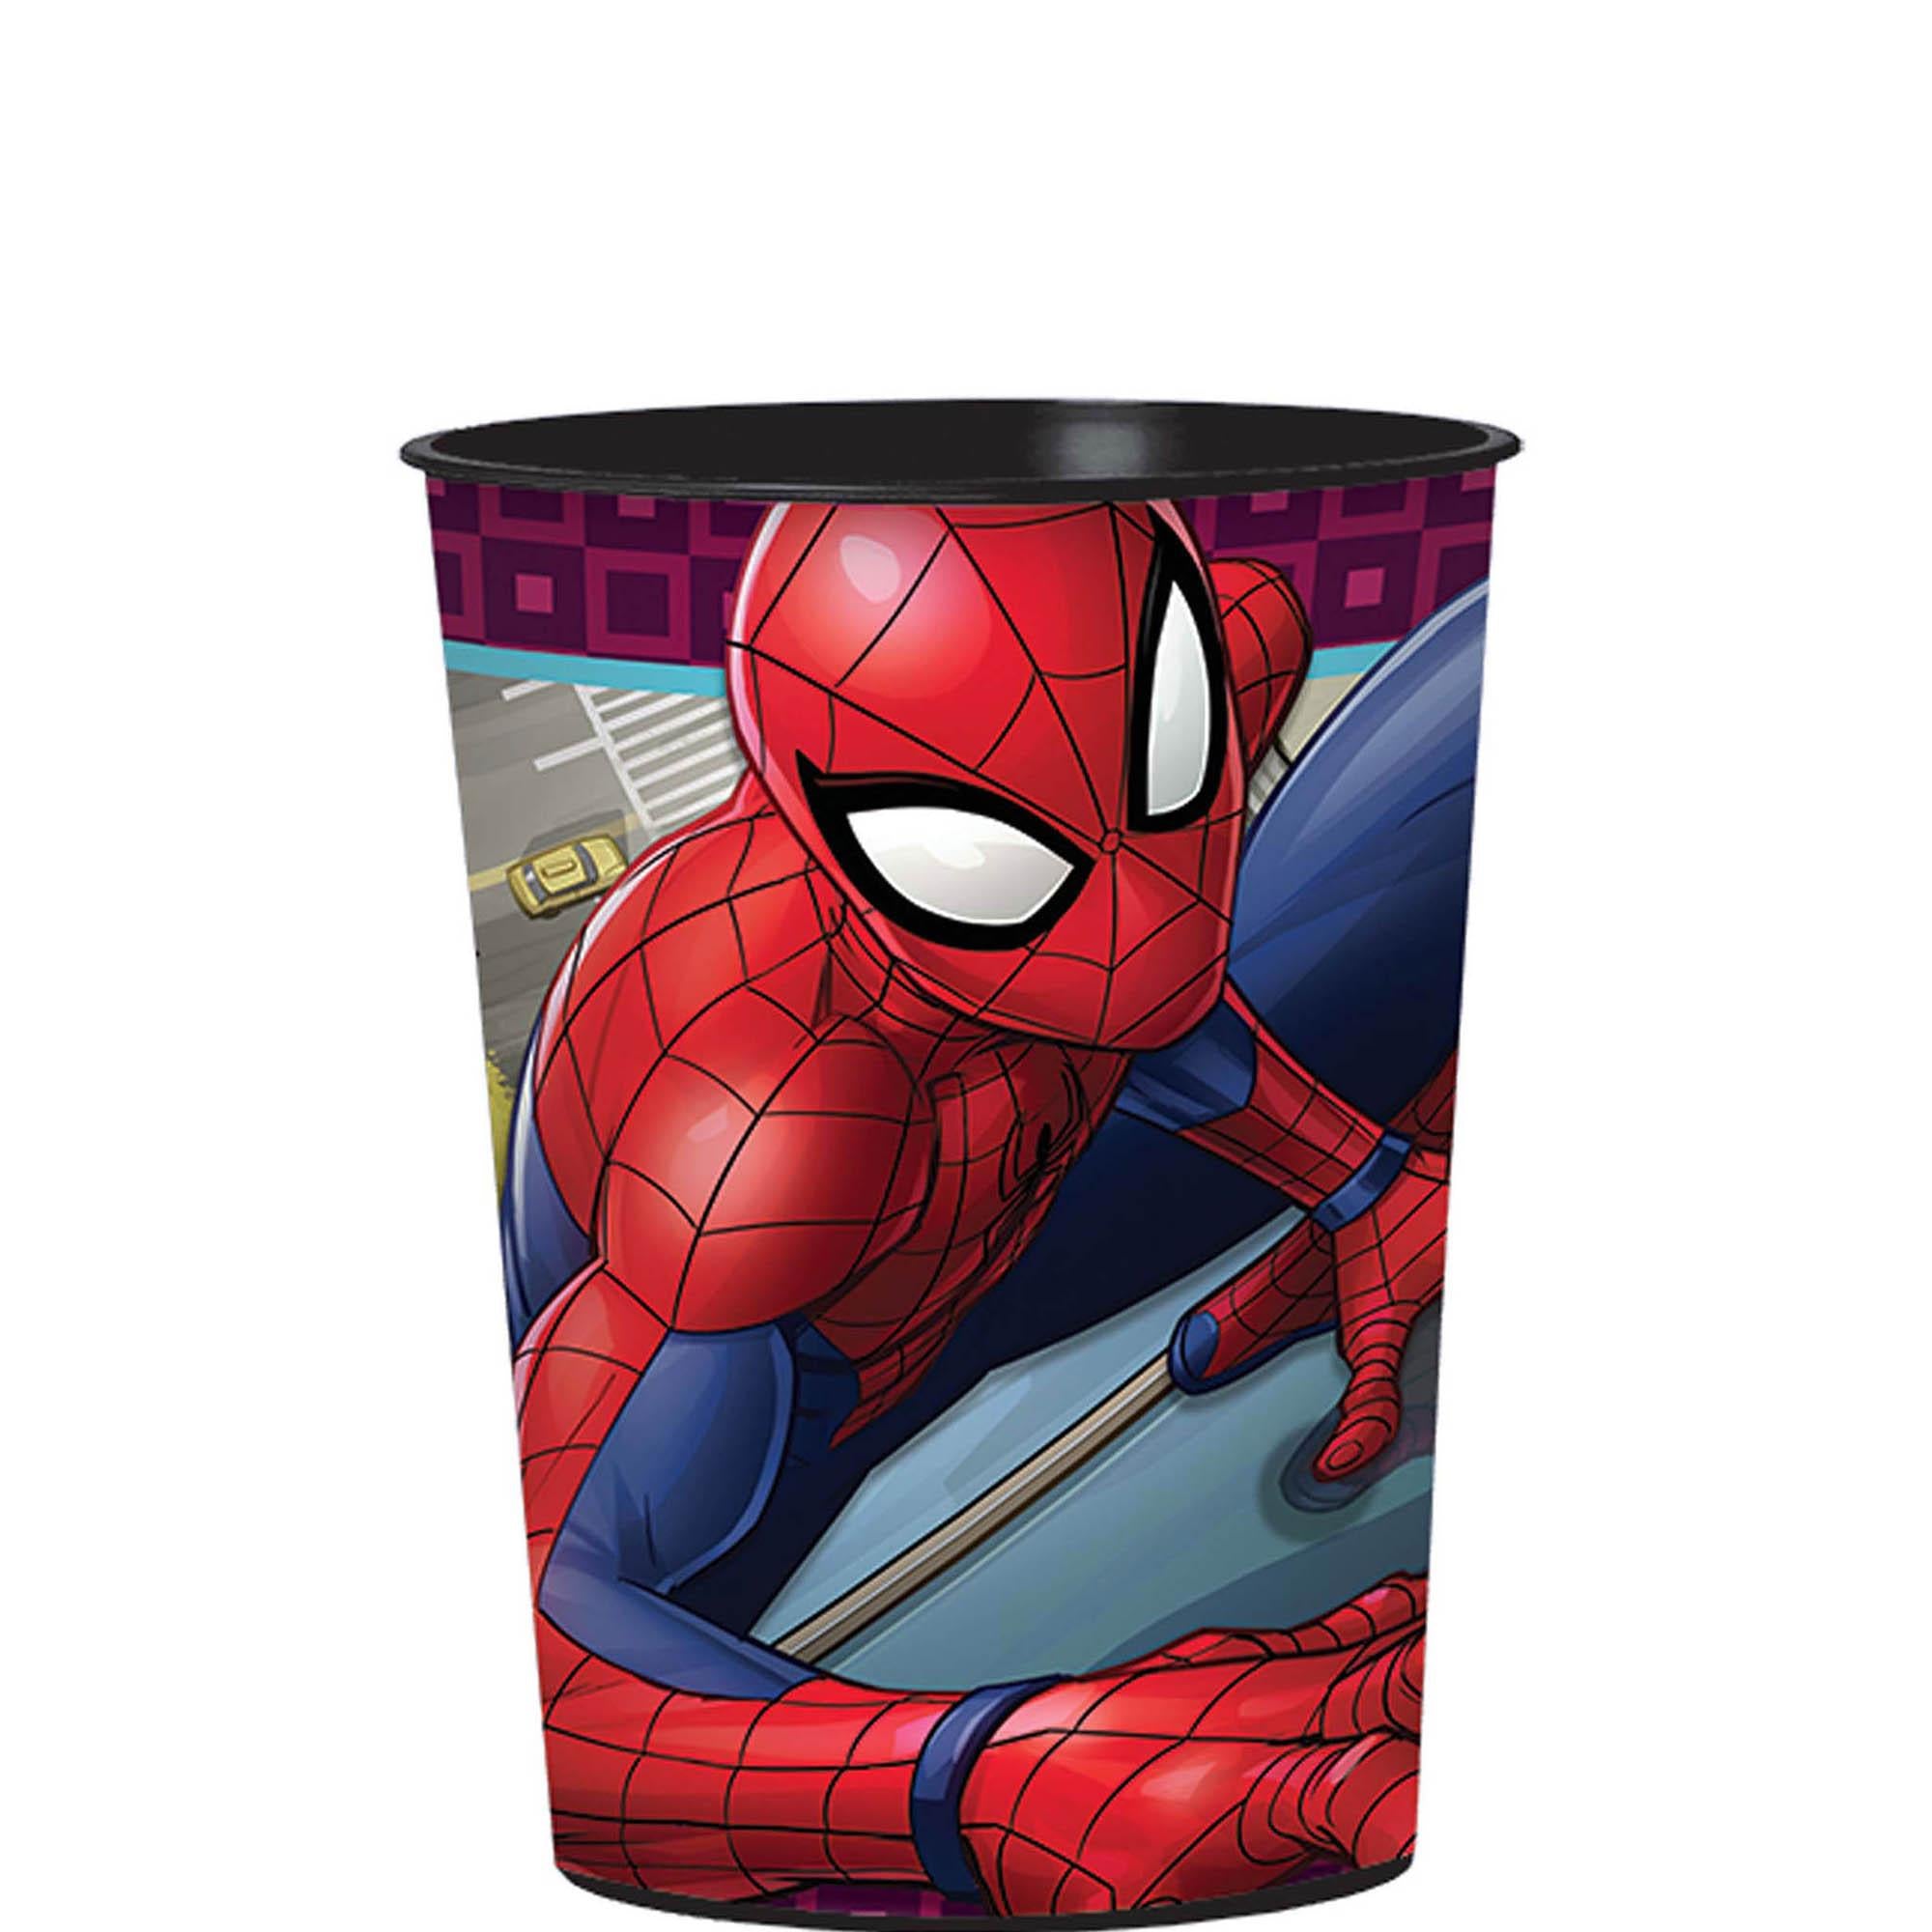 Spider-Man Webbed Plastic Favor Cup 16oz Party Favors - Party Centre